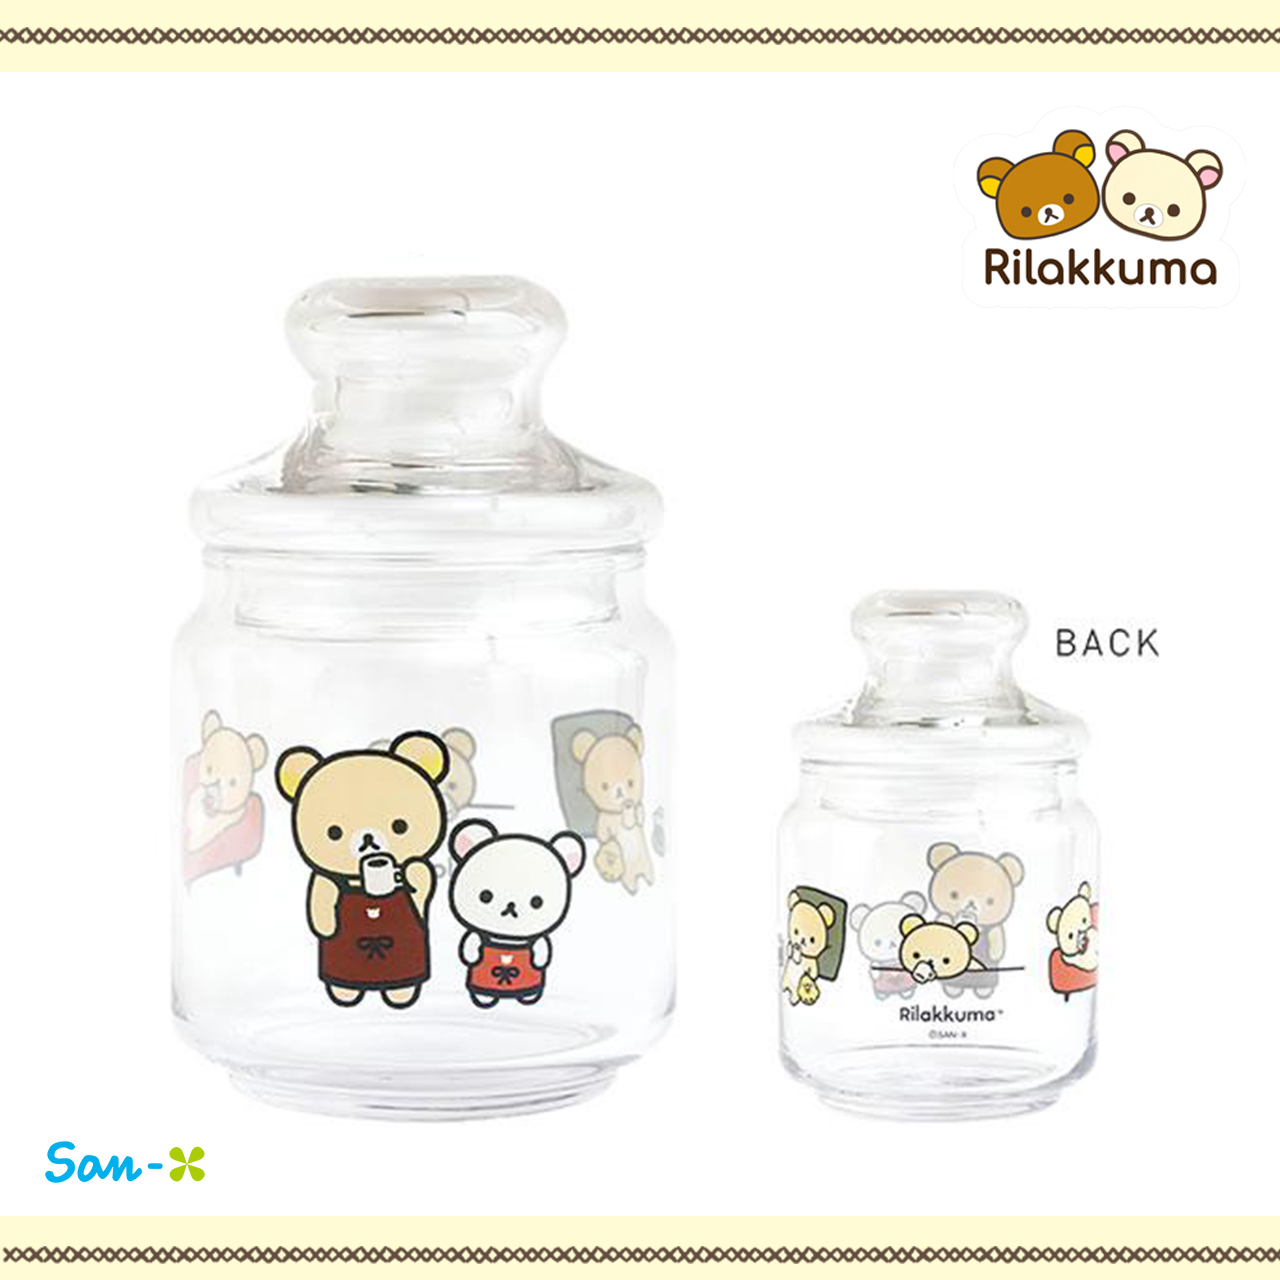 收納玻璃罐-拉拉熊 Rilakkuma san-x 日本進口正版授權